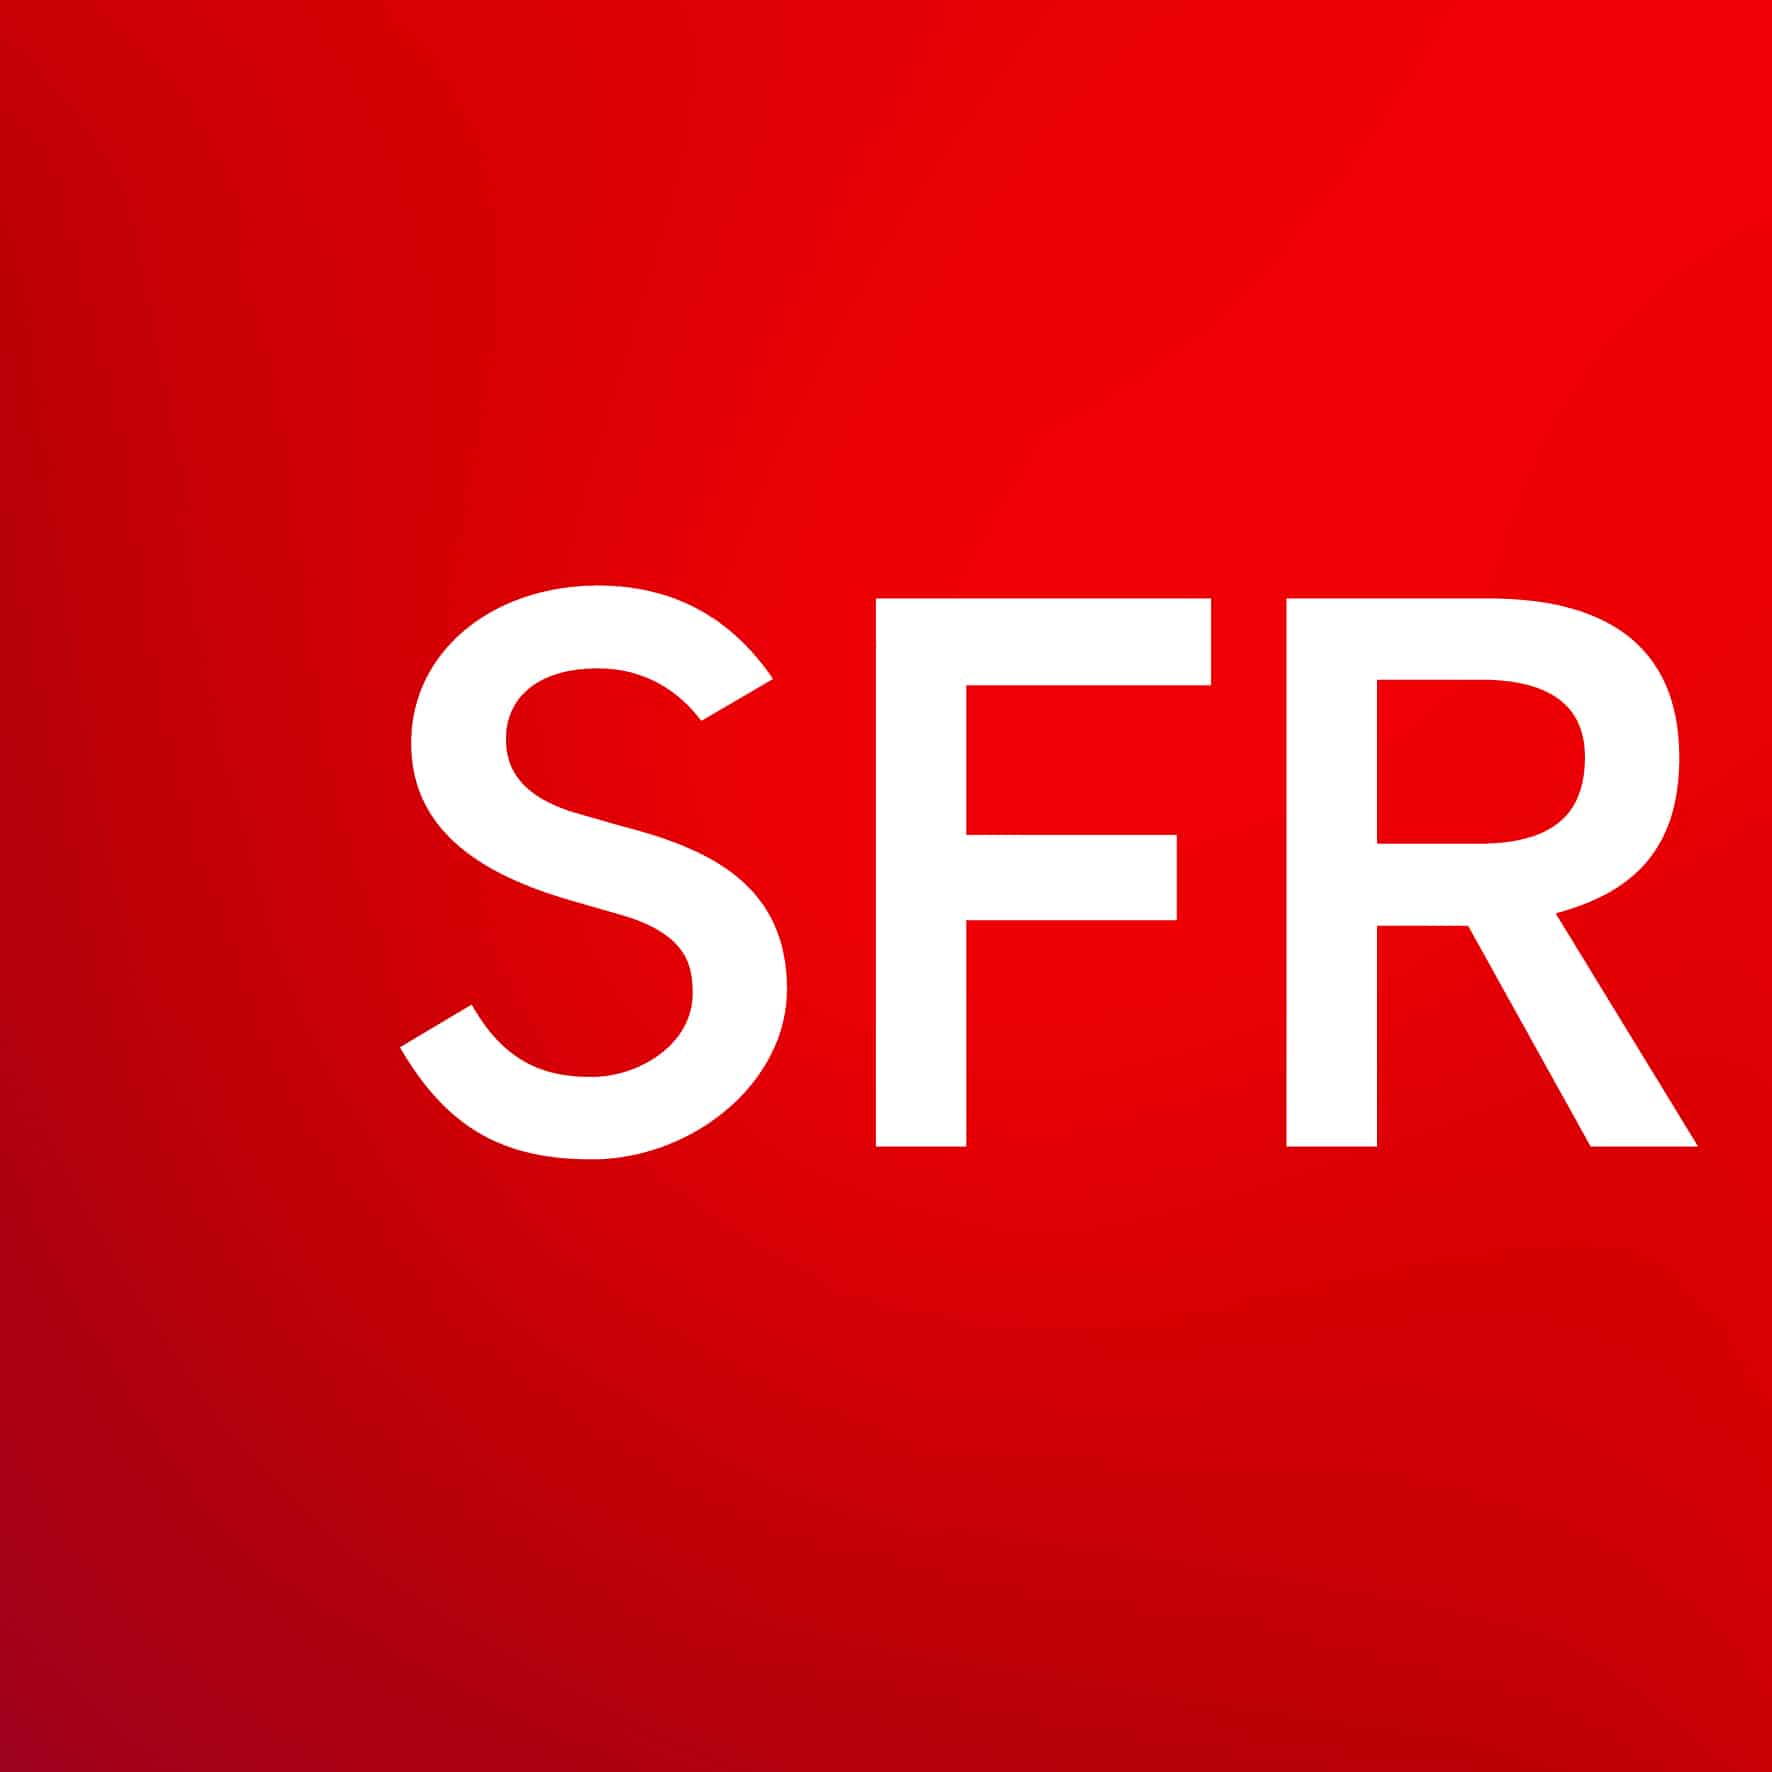 Voulez-vous souscrire une offre SFR ?
